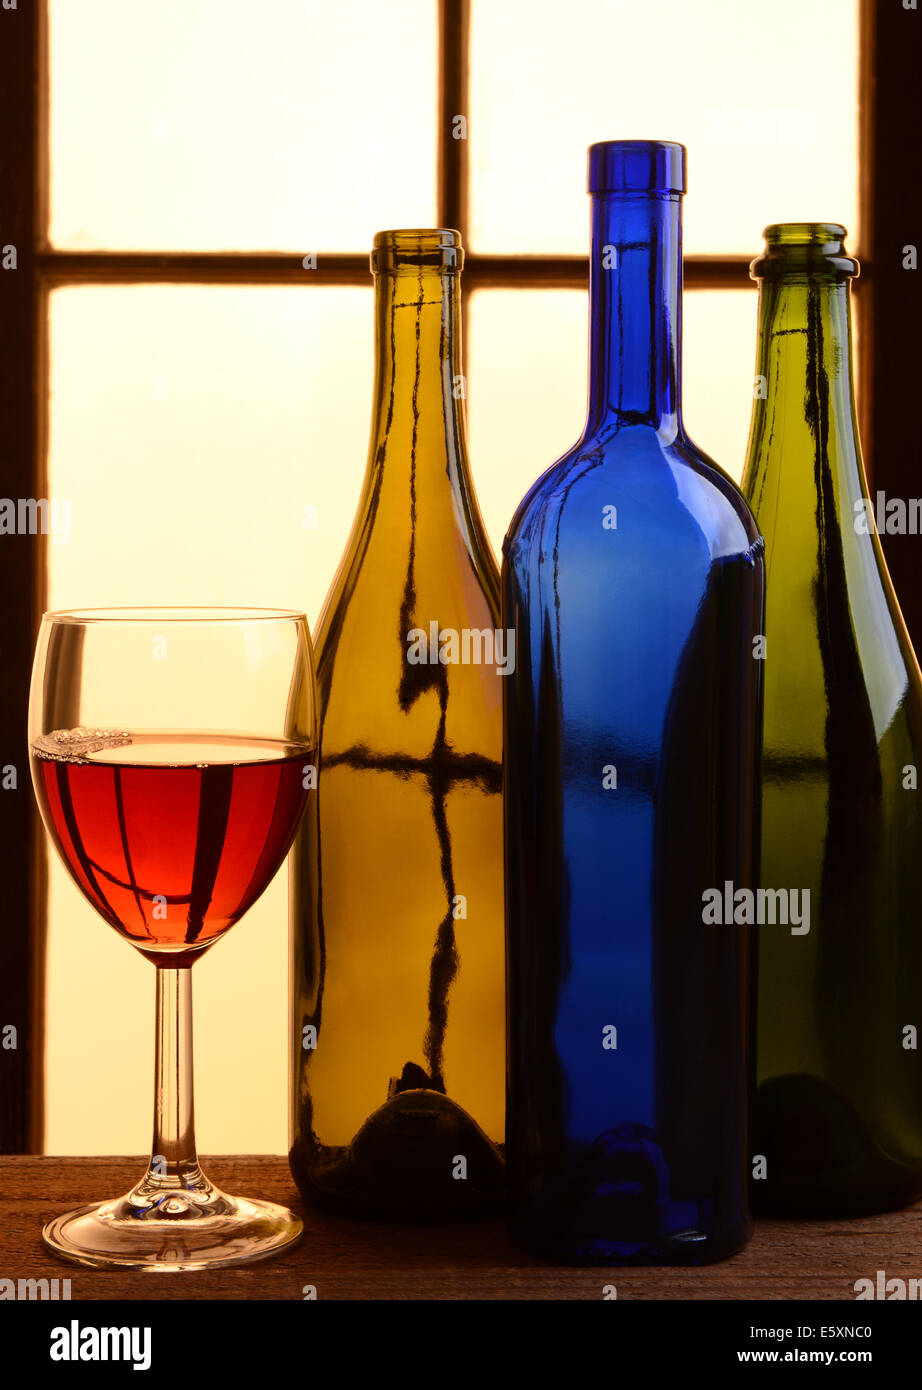 Un vino ancora in vita con toni caldi. Tre diverse bottiglie di vino e un bicchiere di vino rosso davanti a una finestra con una calda luce del sole. Foto Stock